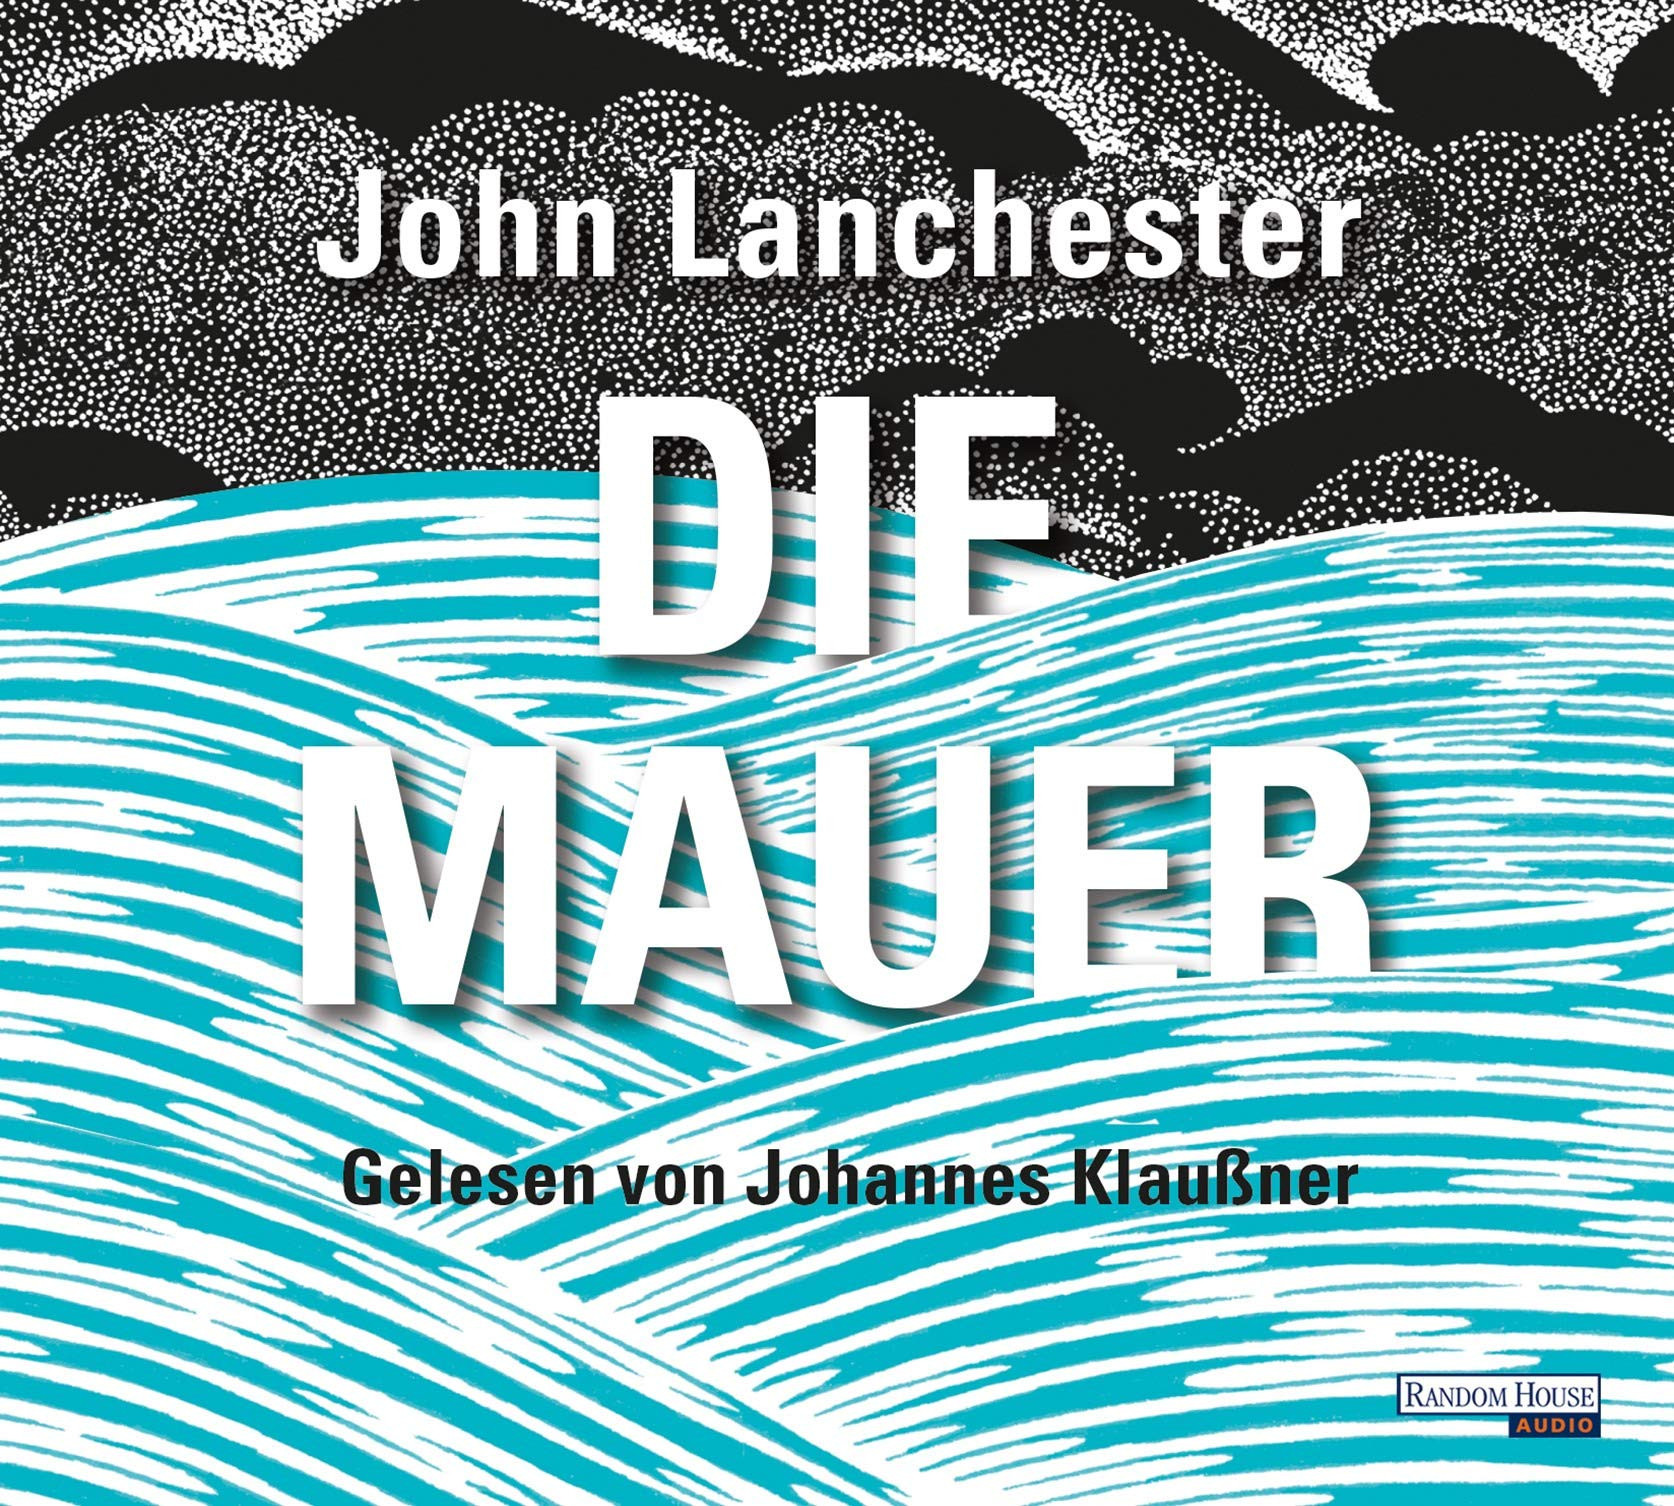 John Lanchester - Die Mauer